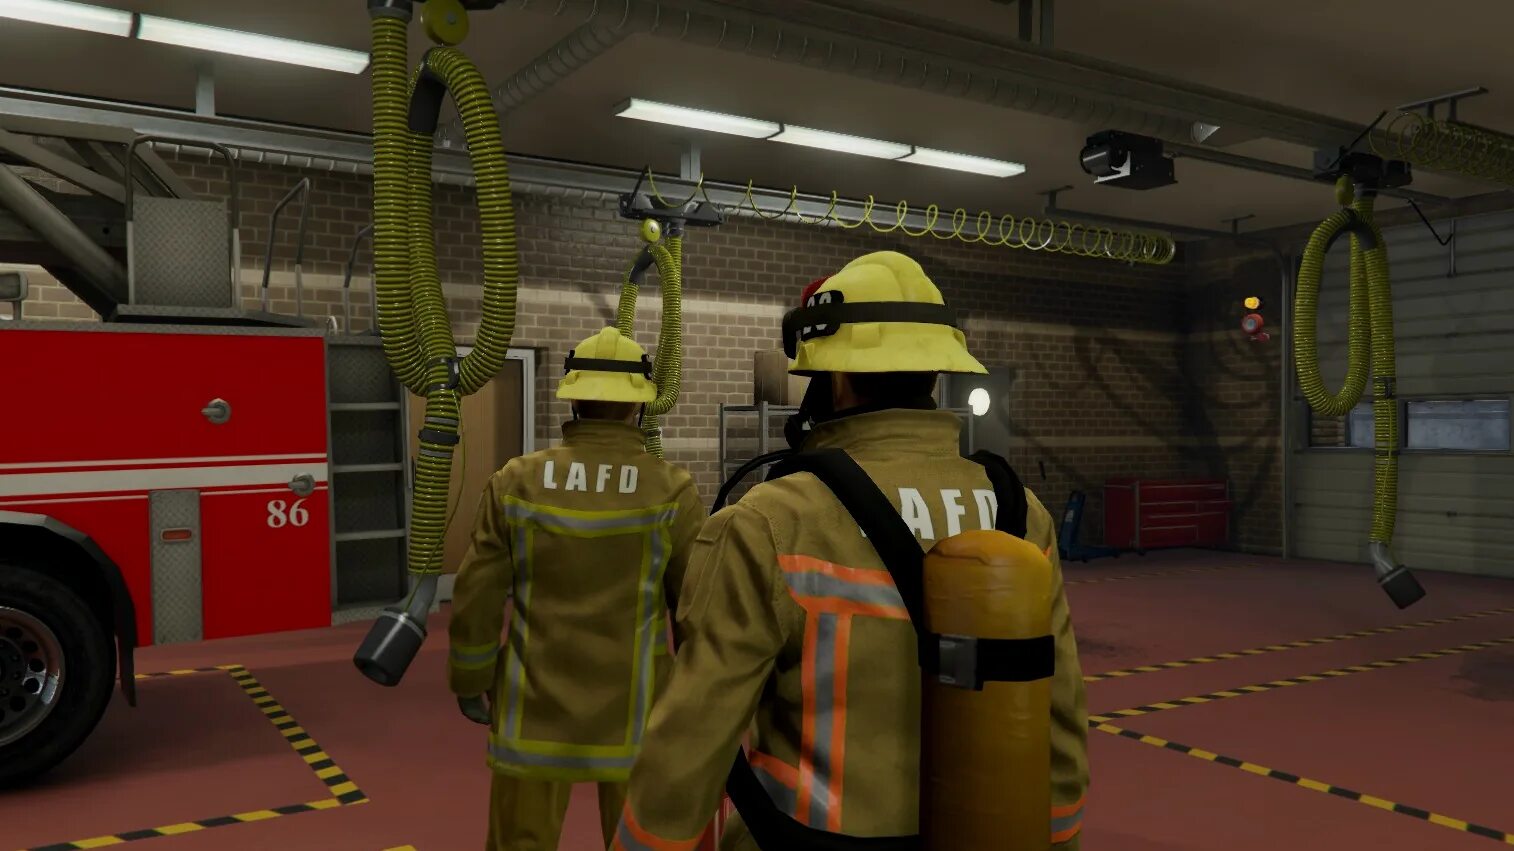 LAFD пожарная форма. GTA 5 Fire uniform. British Fireman GTA 5. LAFD Paramedic. Пожарные какая сфера